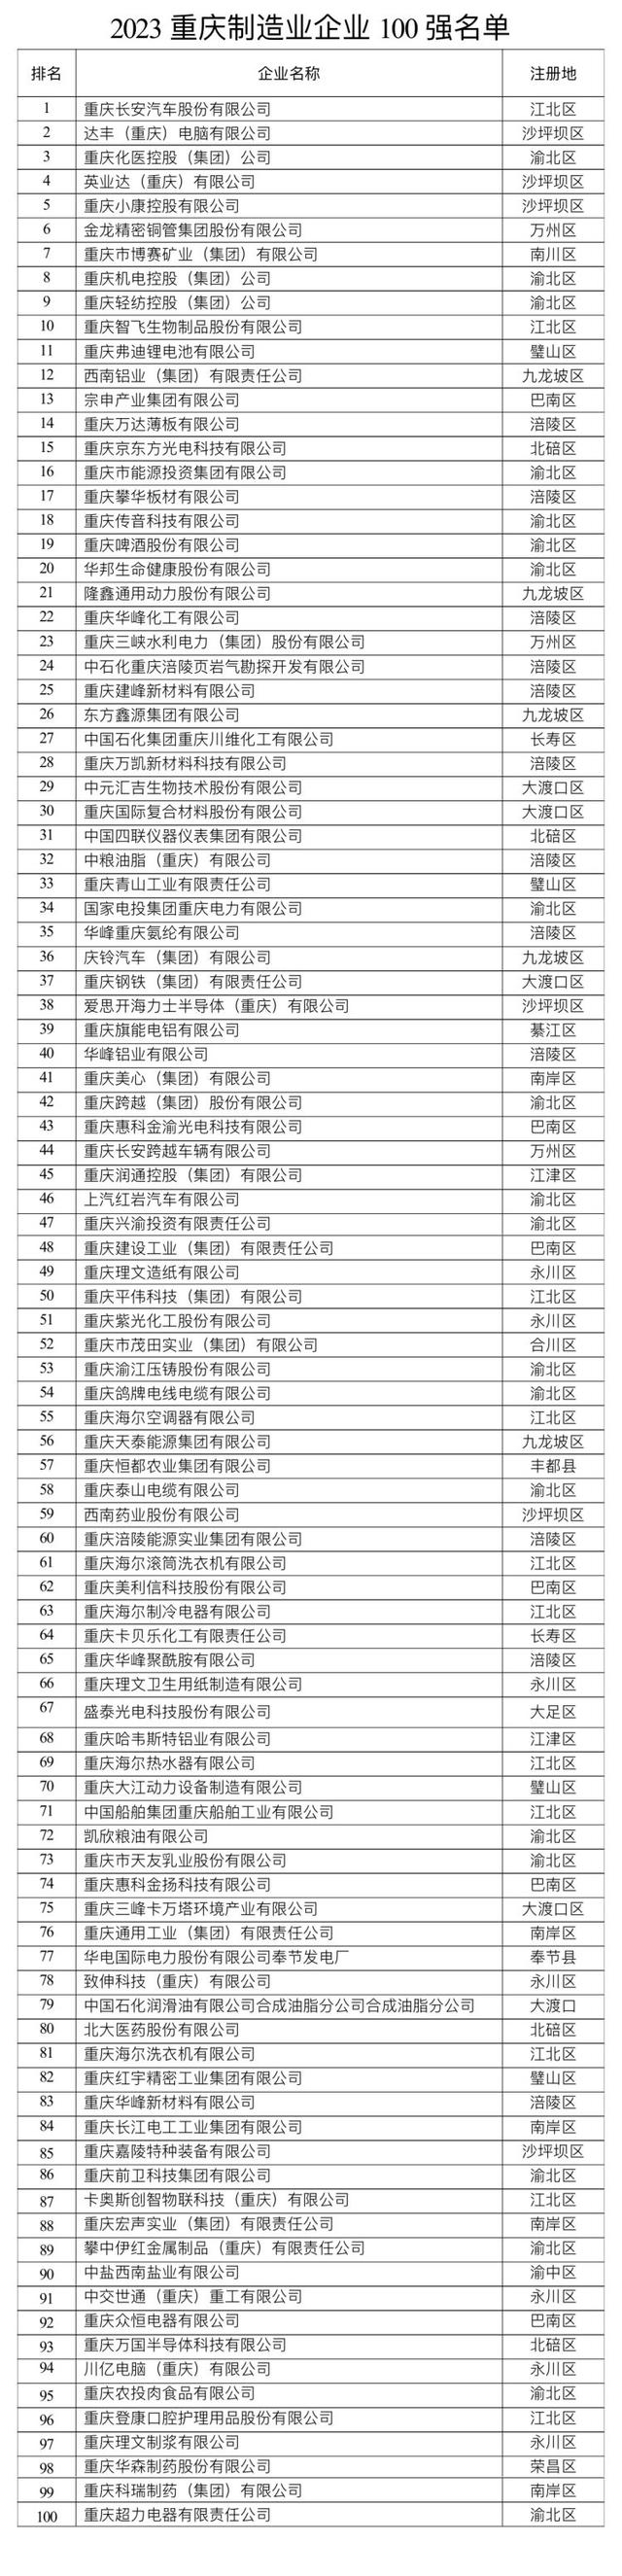 2023重庆企业100强出炉！龙湖集团、长安汽车、达丰电脑位居前三